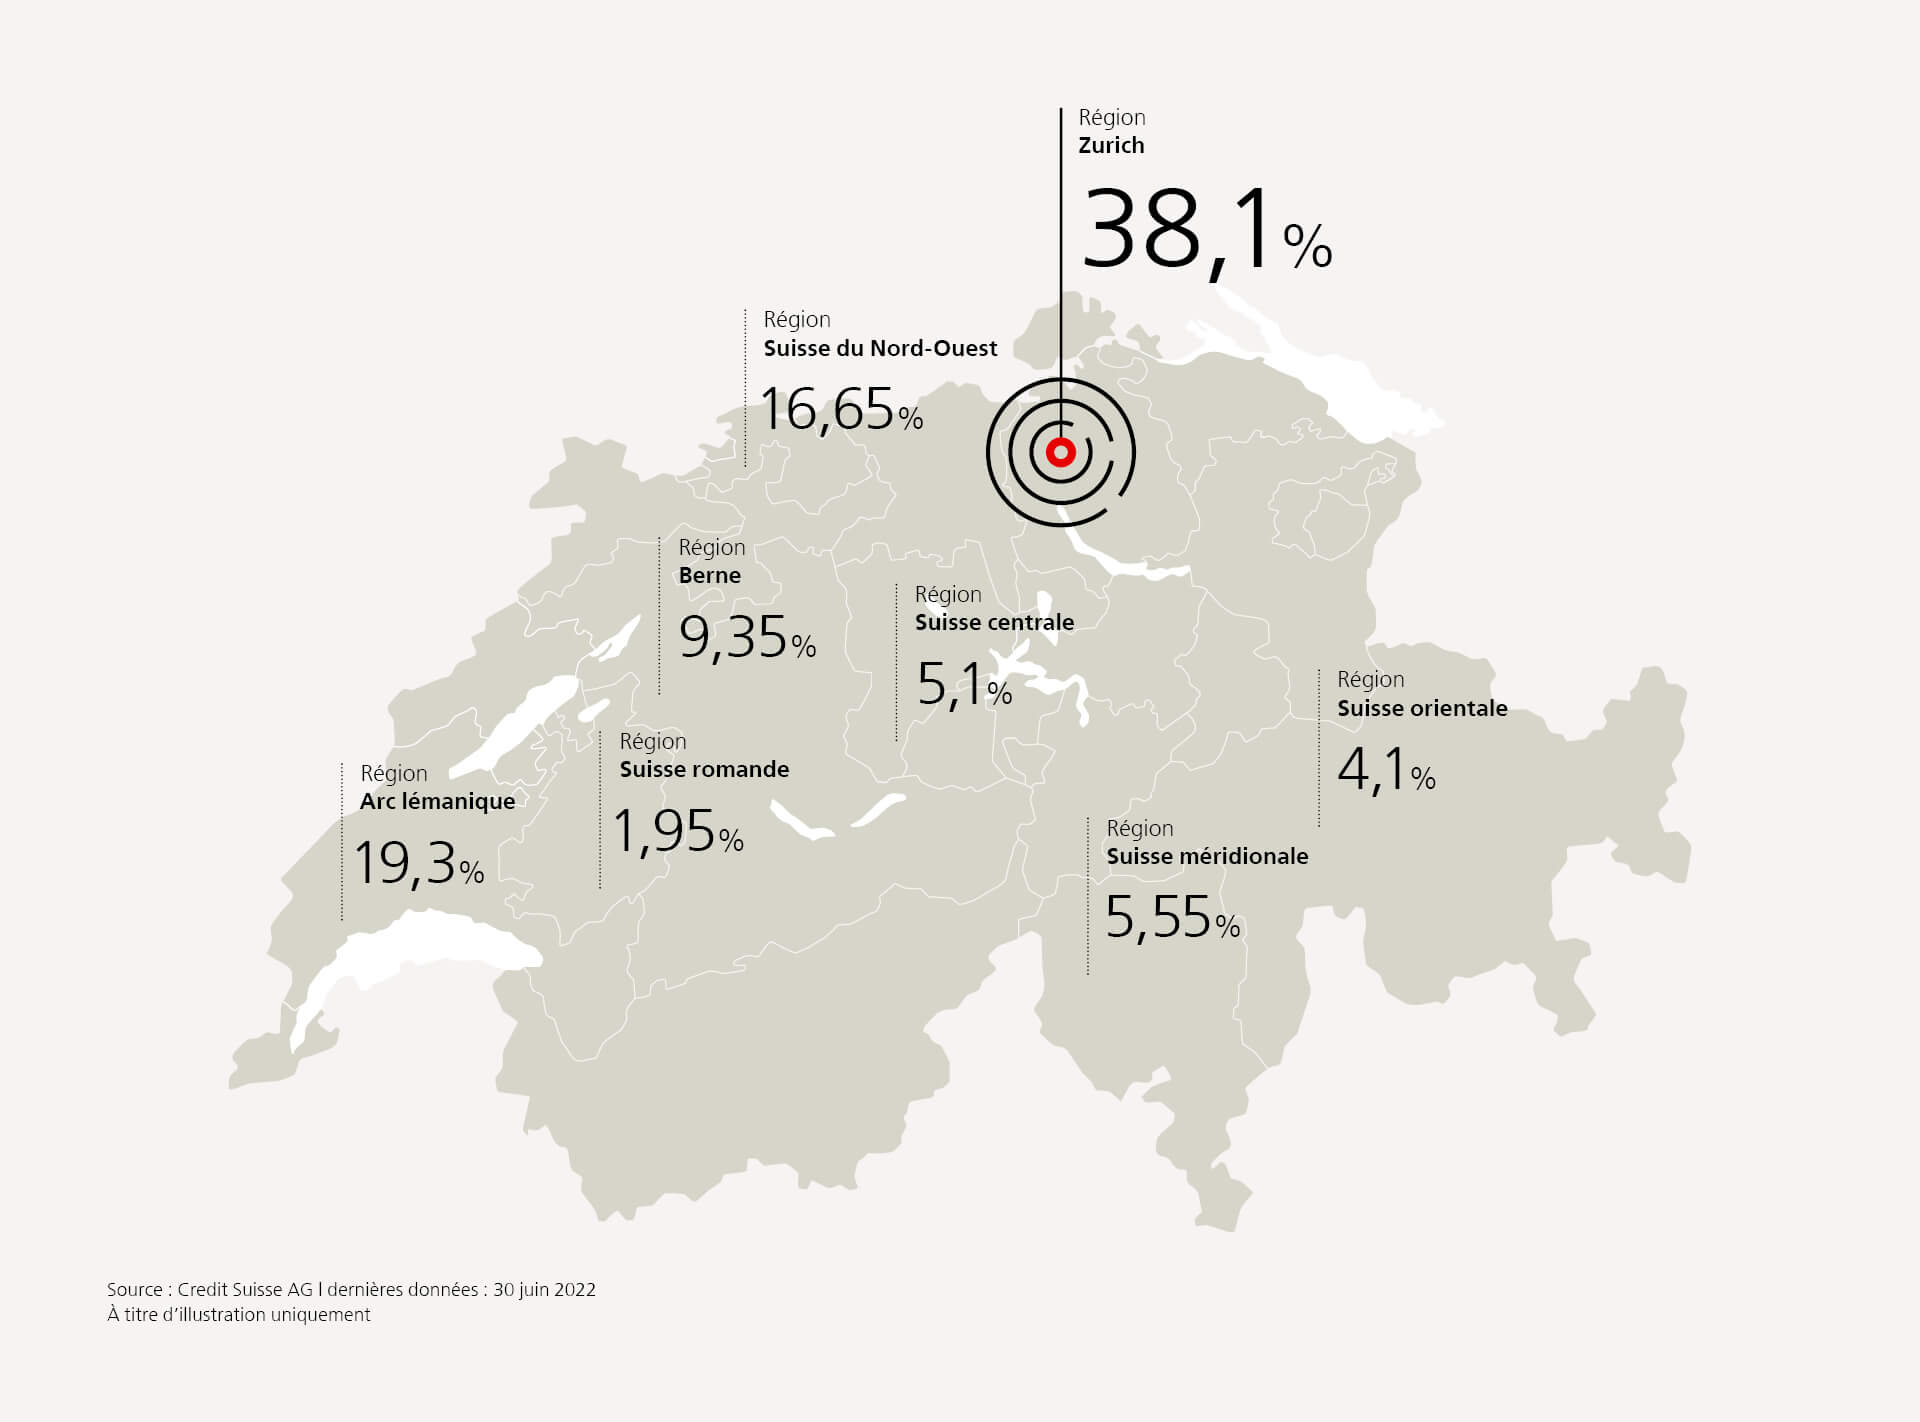 La carte montre la répartition géographique de l’immobilier de Credit Suisse Fondation de placement Real Estate Switzerland.